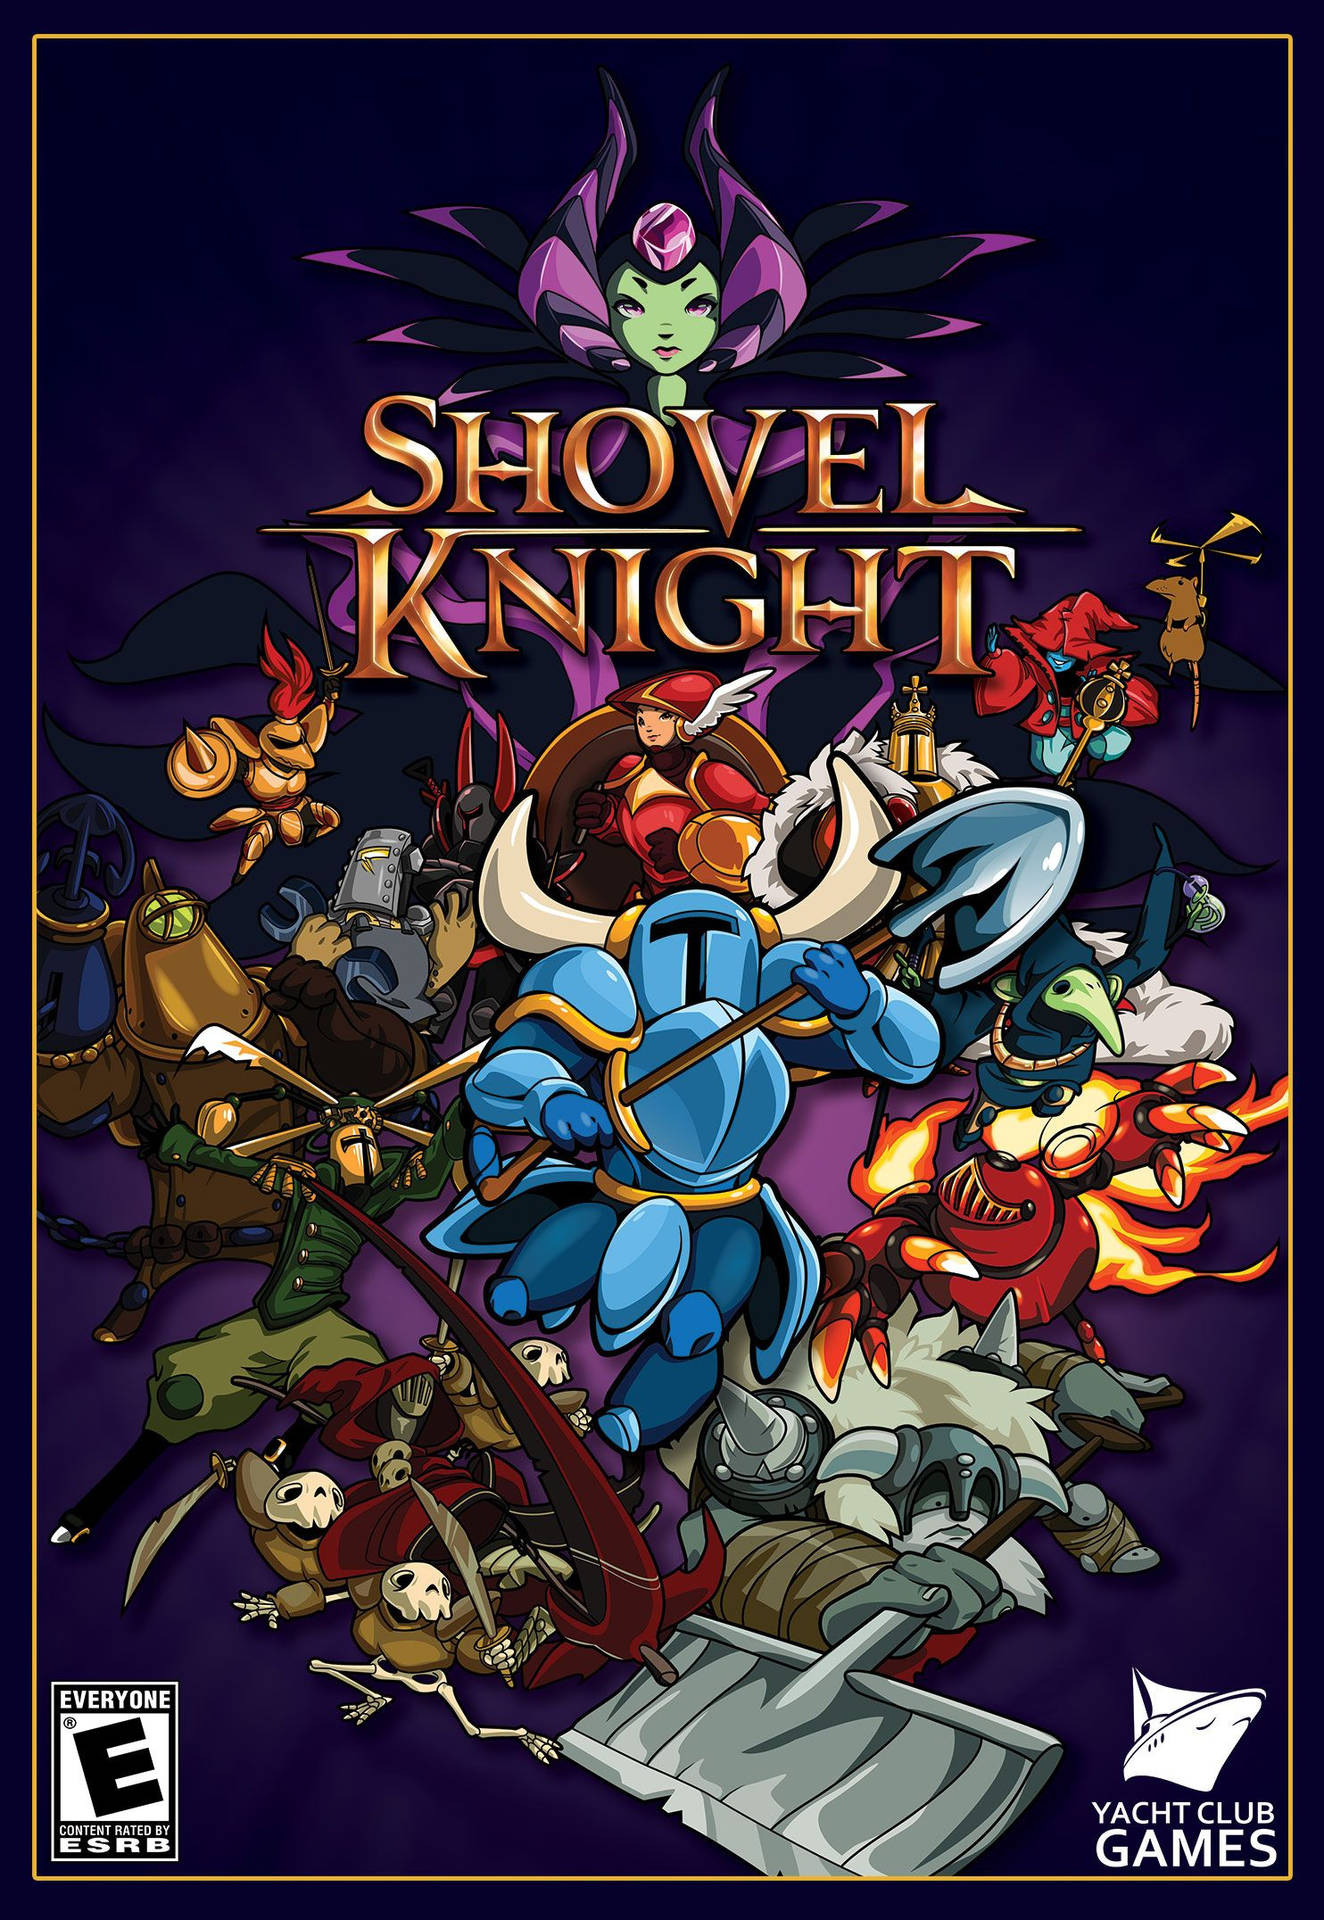 Shovel Knight Game Cover Art Wallpaper